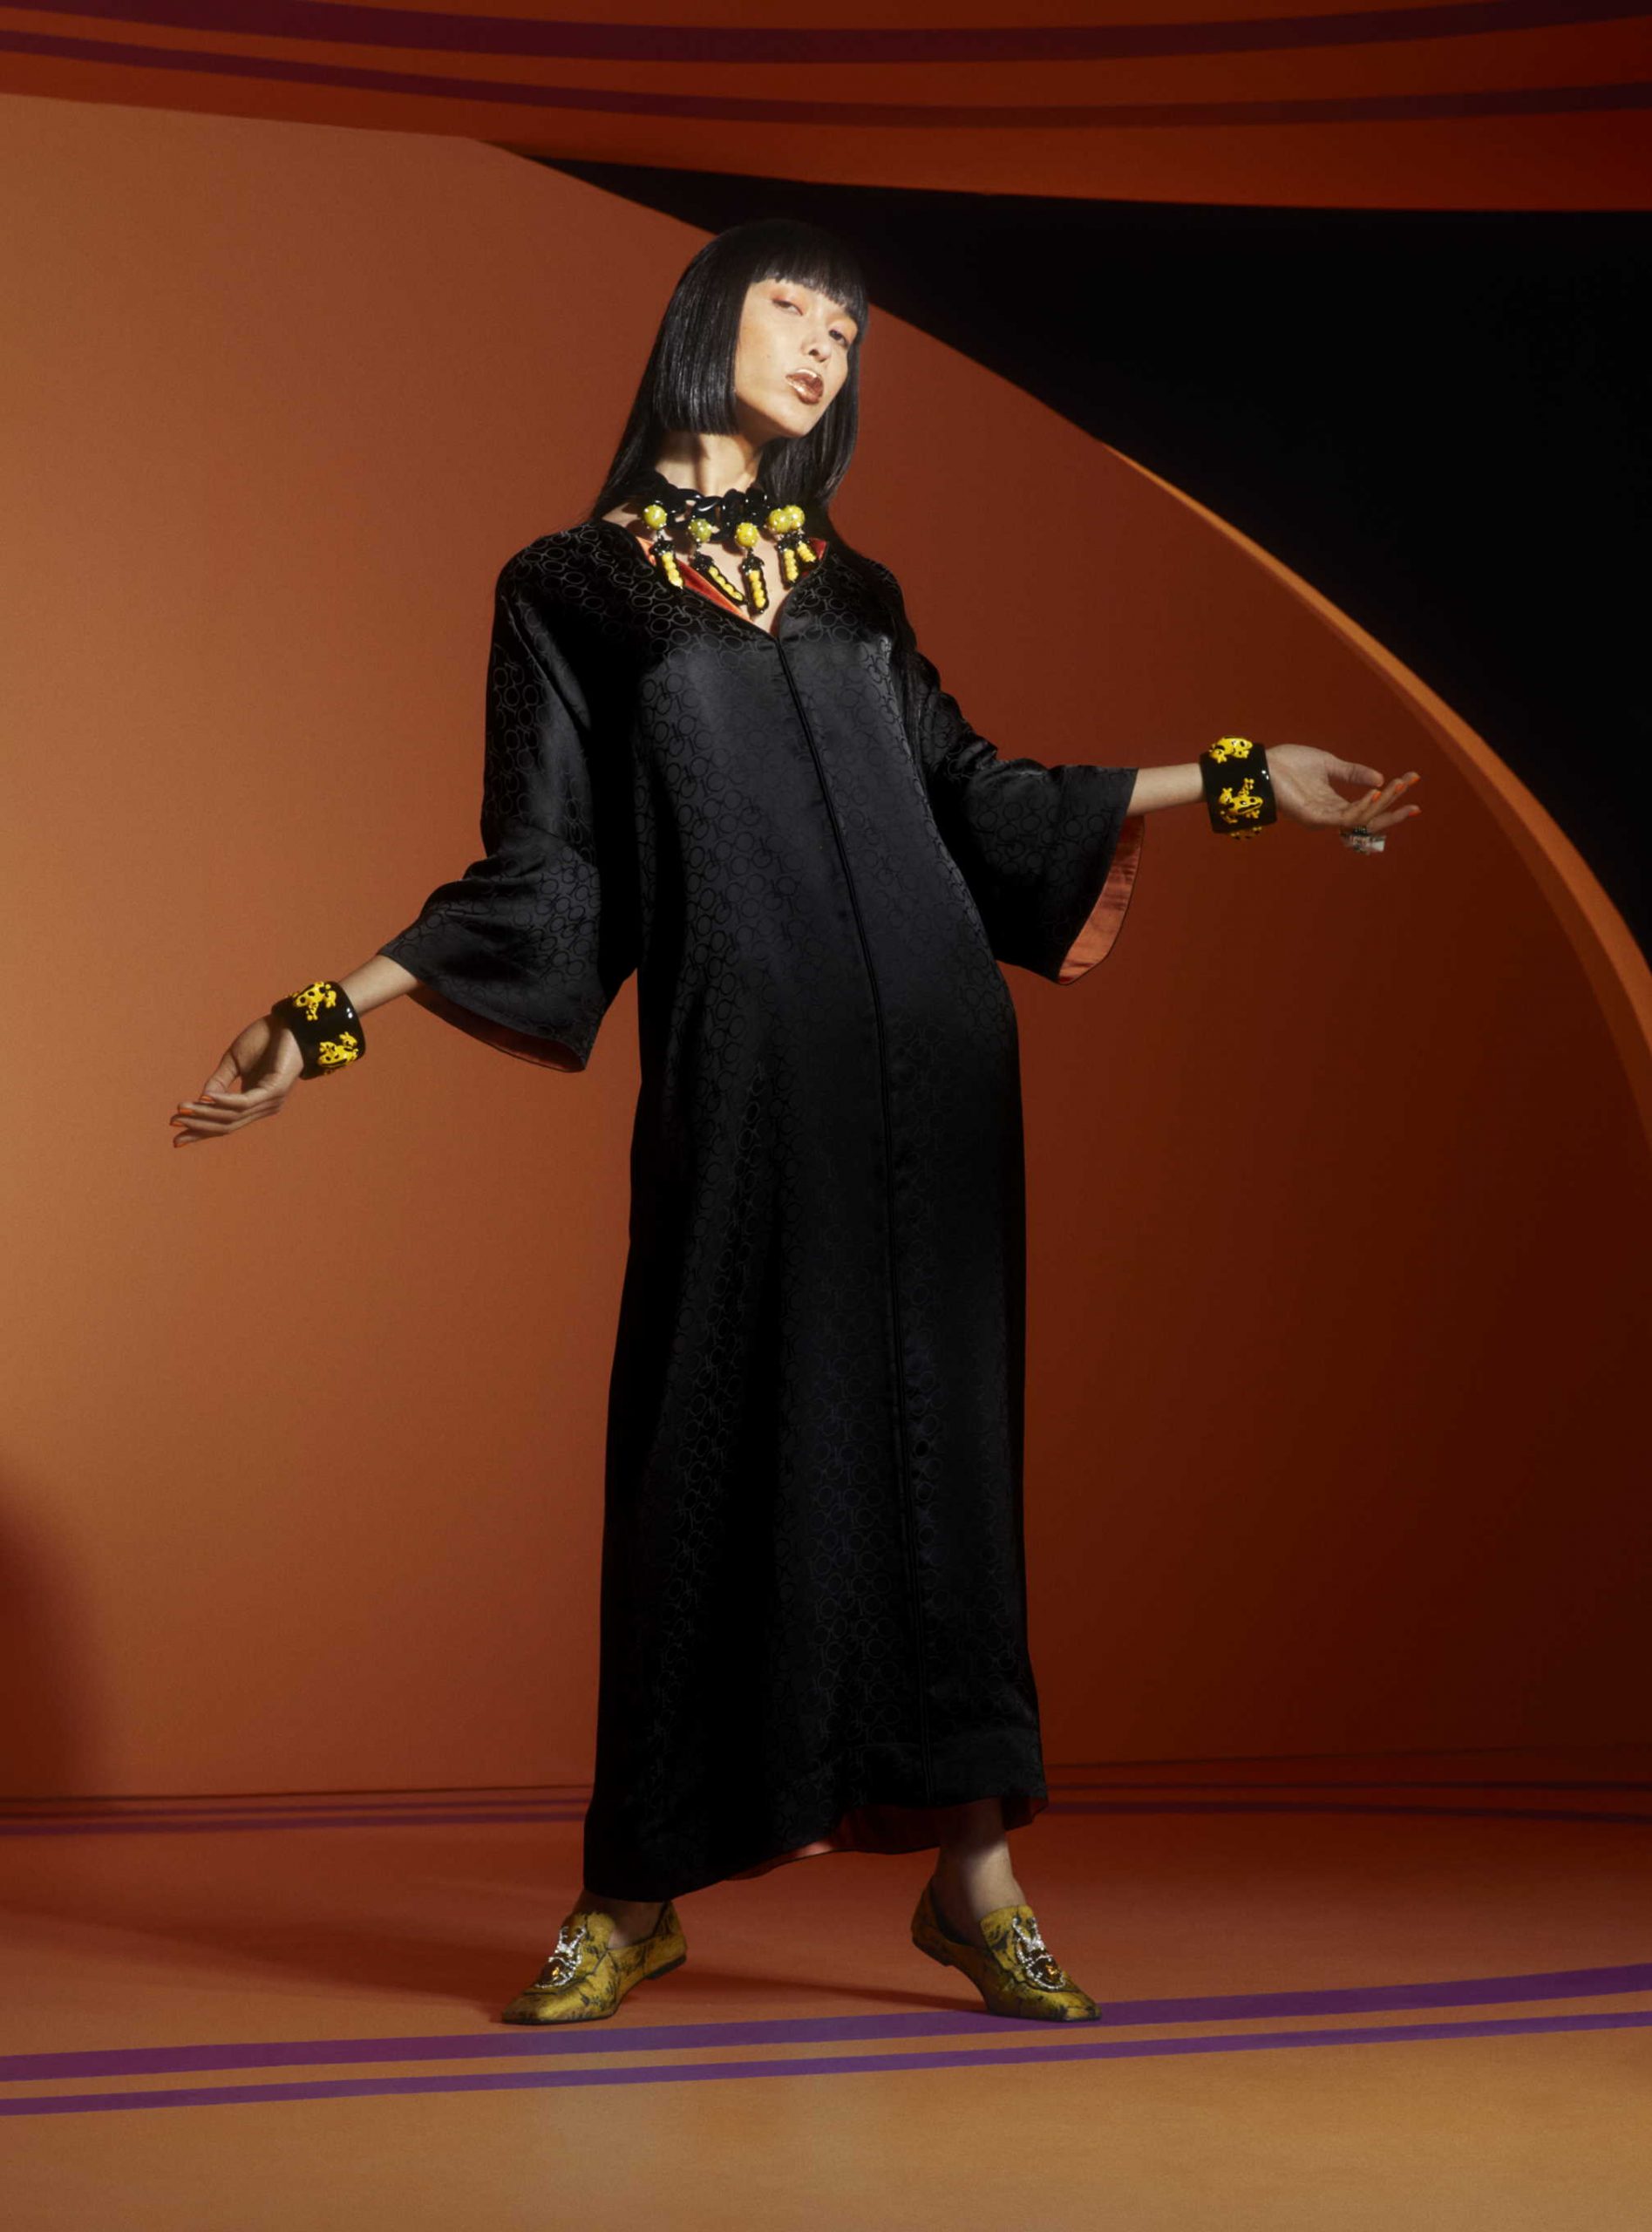 H&M s ponosom predstavlja prekrasnu i zaigranu kolekciju u suradnji s modnom ikonom Iris Apfel slaveći stoljeće stila